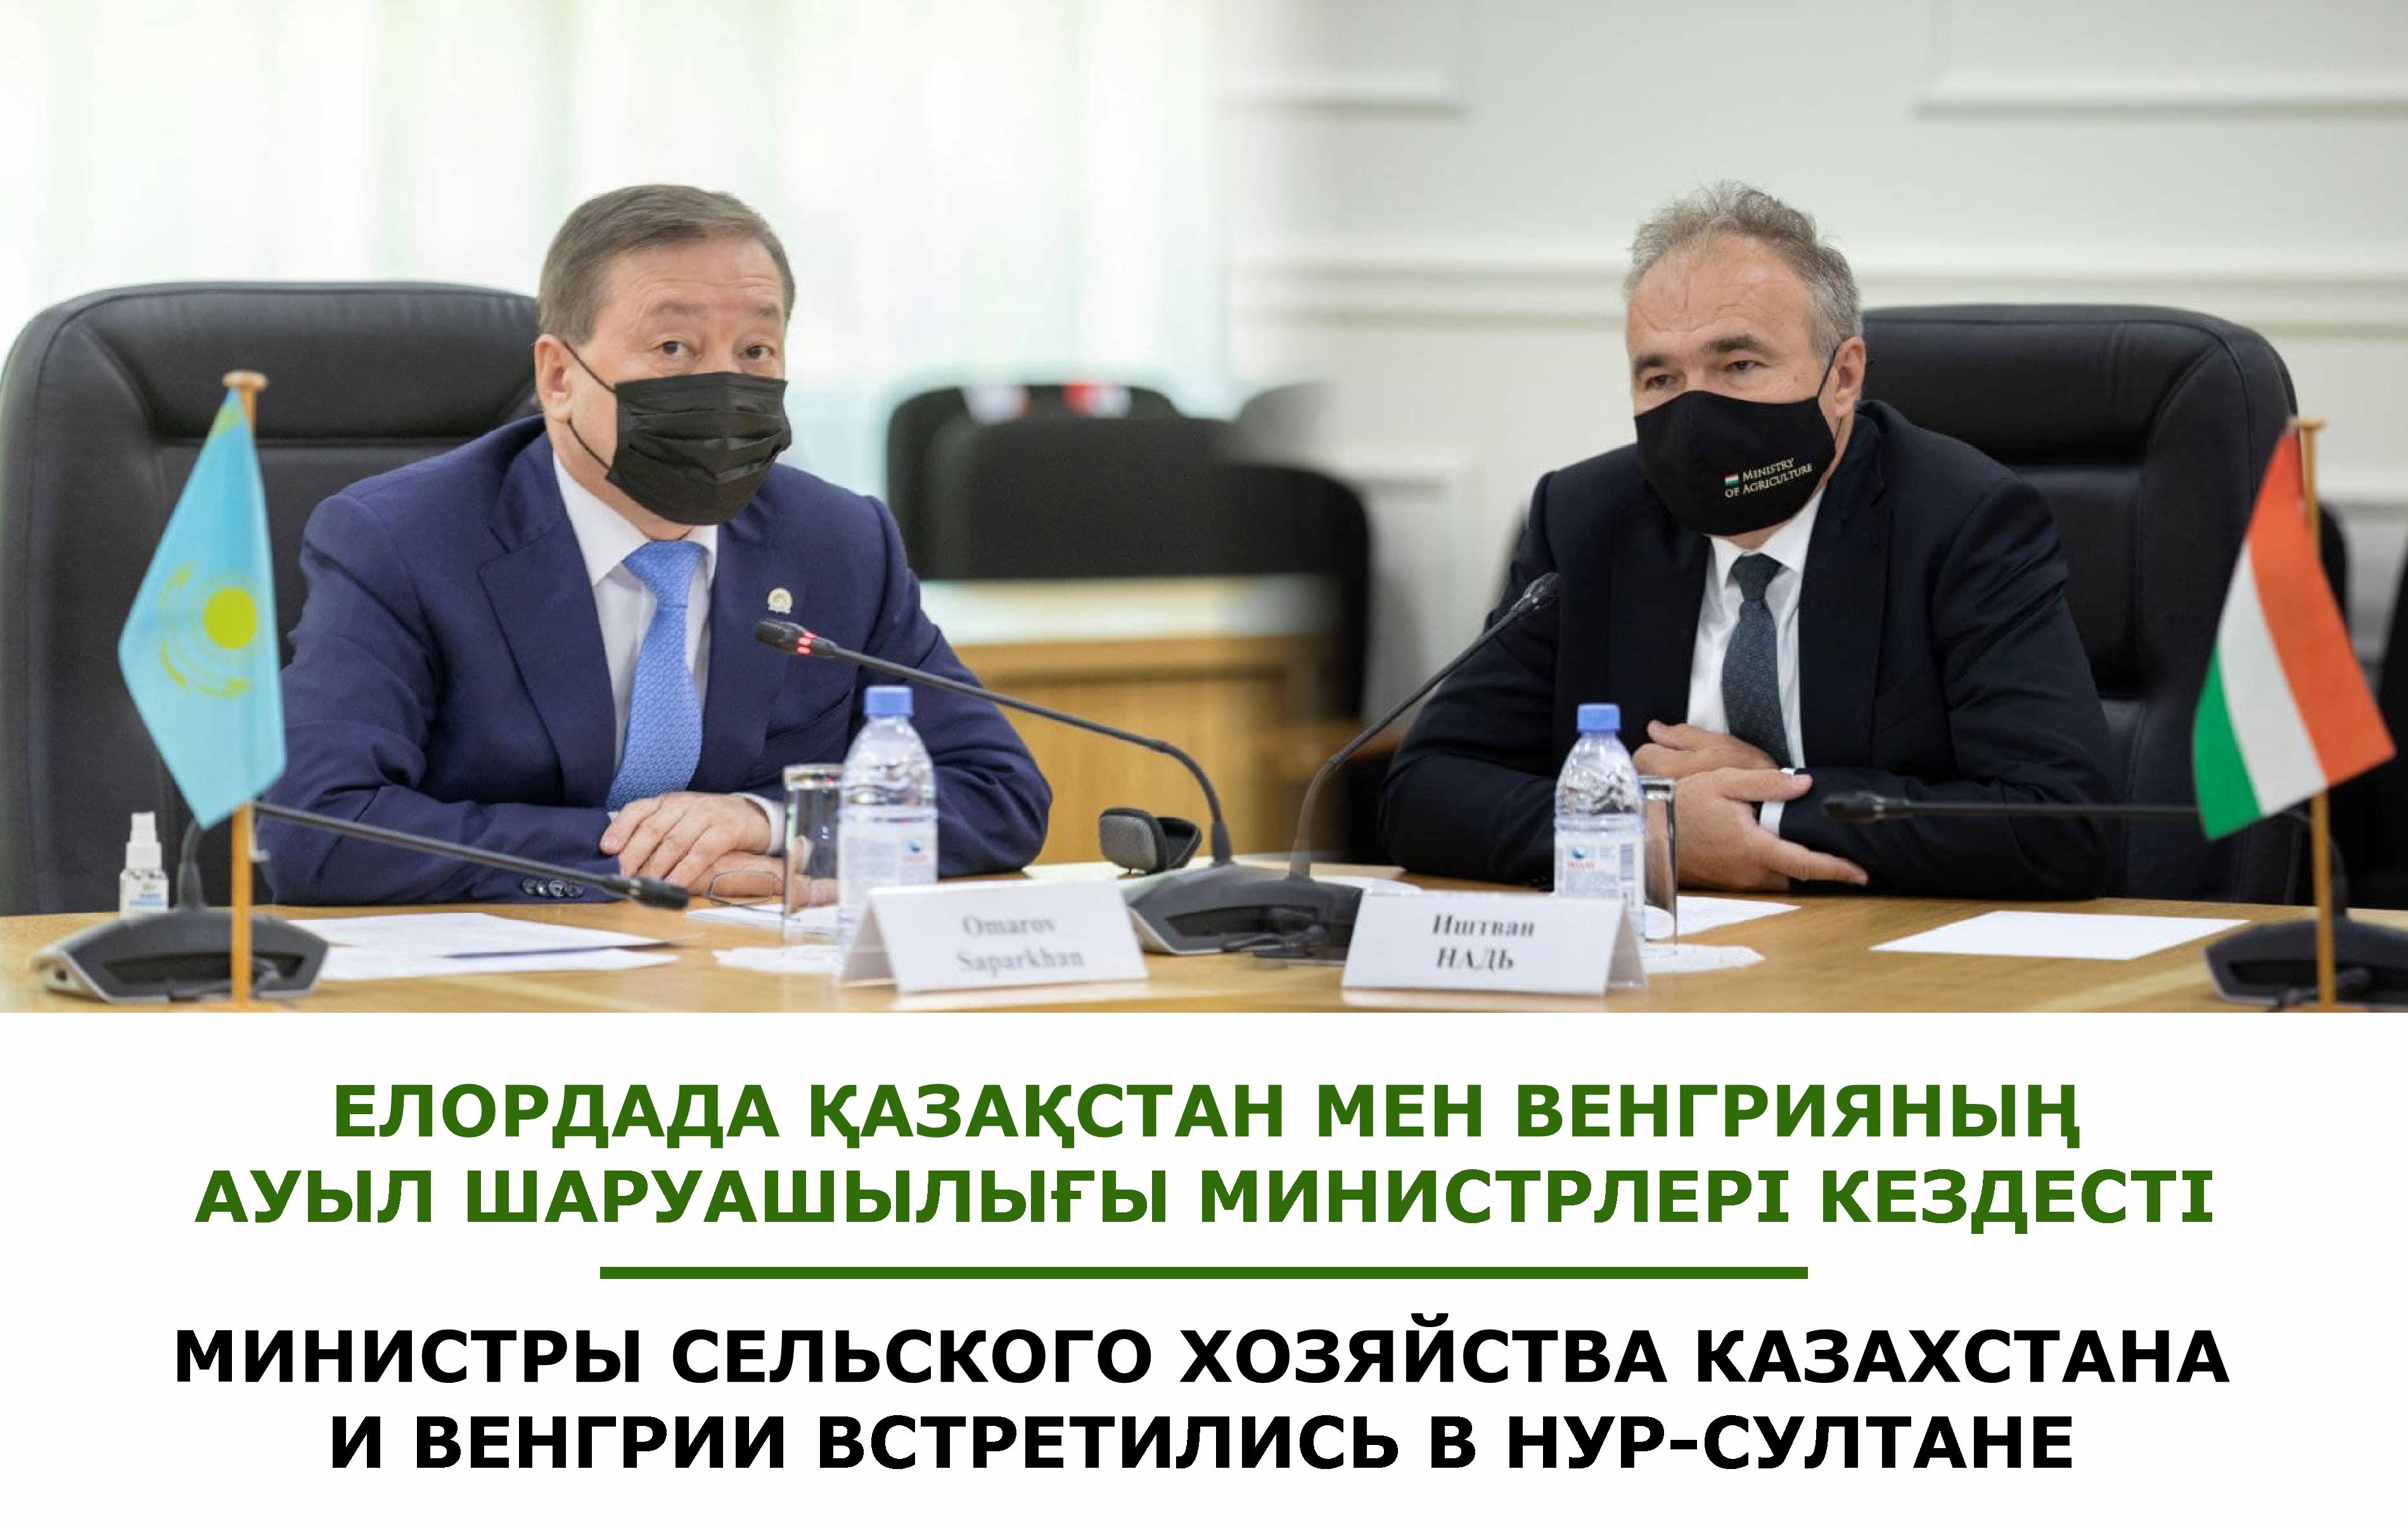 Министры сельского хозяйства Казахстана и Венгрии встретились в Нур-Султане